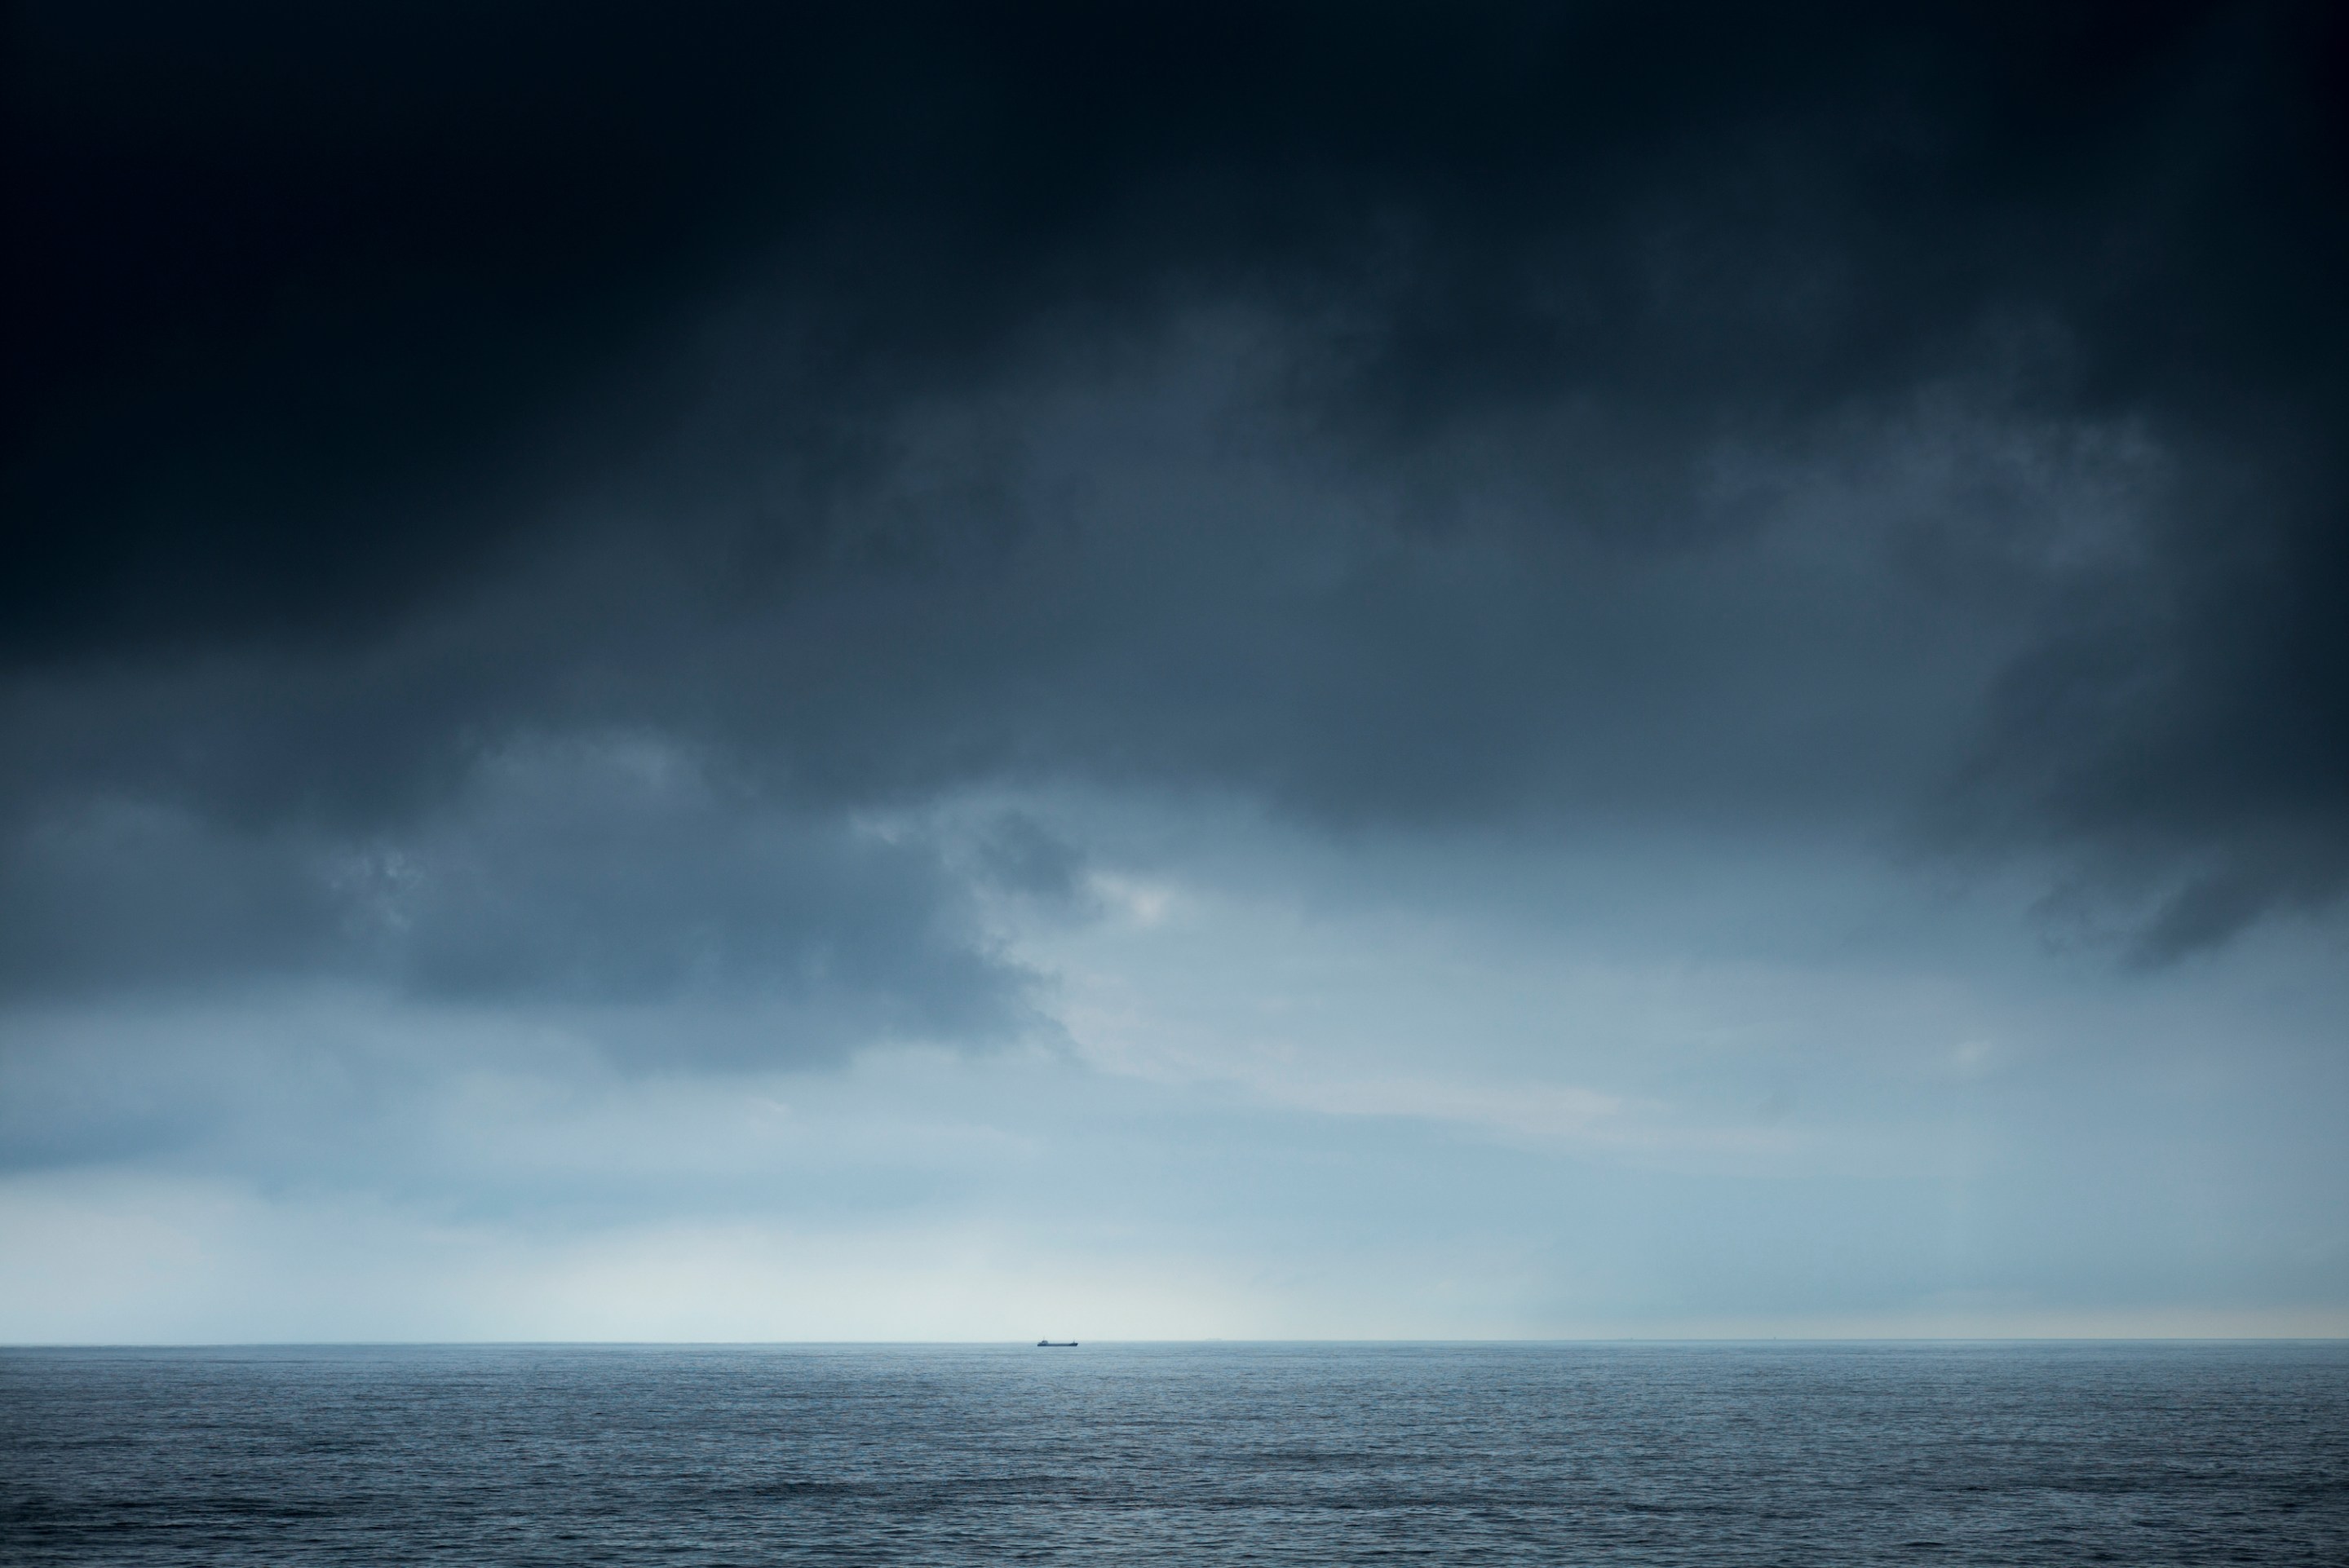 BAY OF BISCAY, SPAIN: Tanker under dark clouds in The Bay of Biscay north of Santander in the Atlantic Ocean, Spain